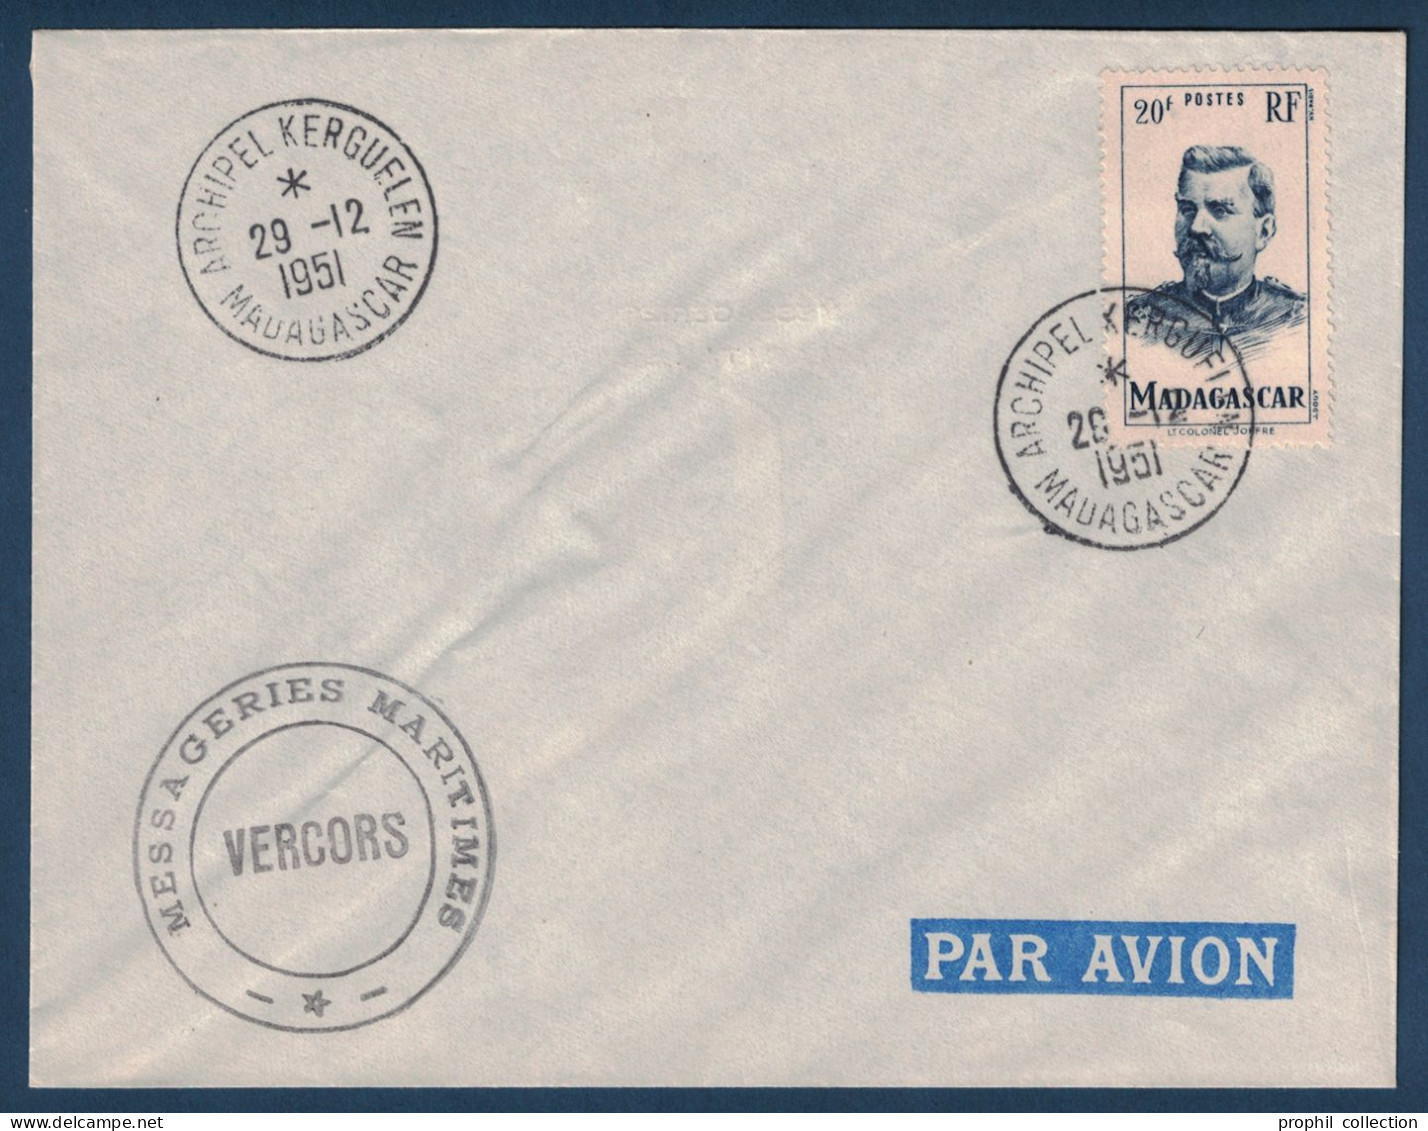 CACHET " MESSAGERIES MARITIMES VERCORS " + " ARCHIPEL KERGUELEN MADAGASCAR " Du 29.12.1951 Sur LETTRE ENVELOPPE - ...-1955 Préphilatélie